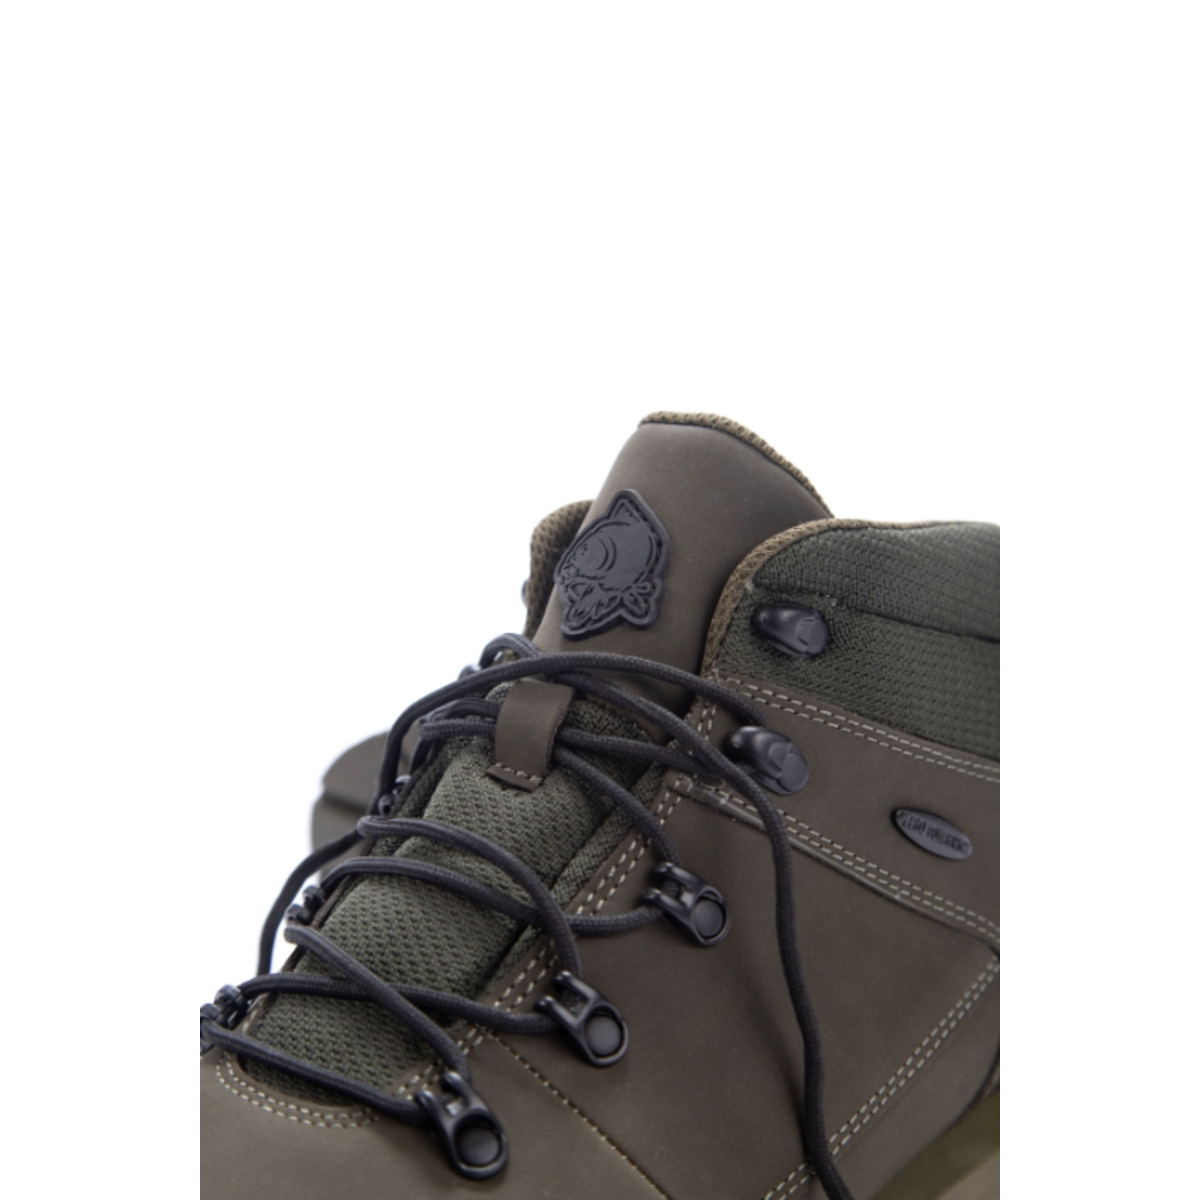 Nash Zt Trail Boots - Size 10 (44)